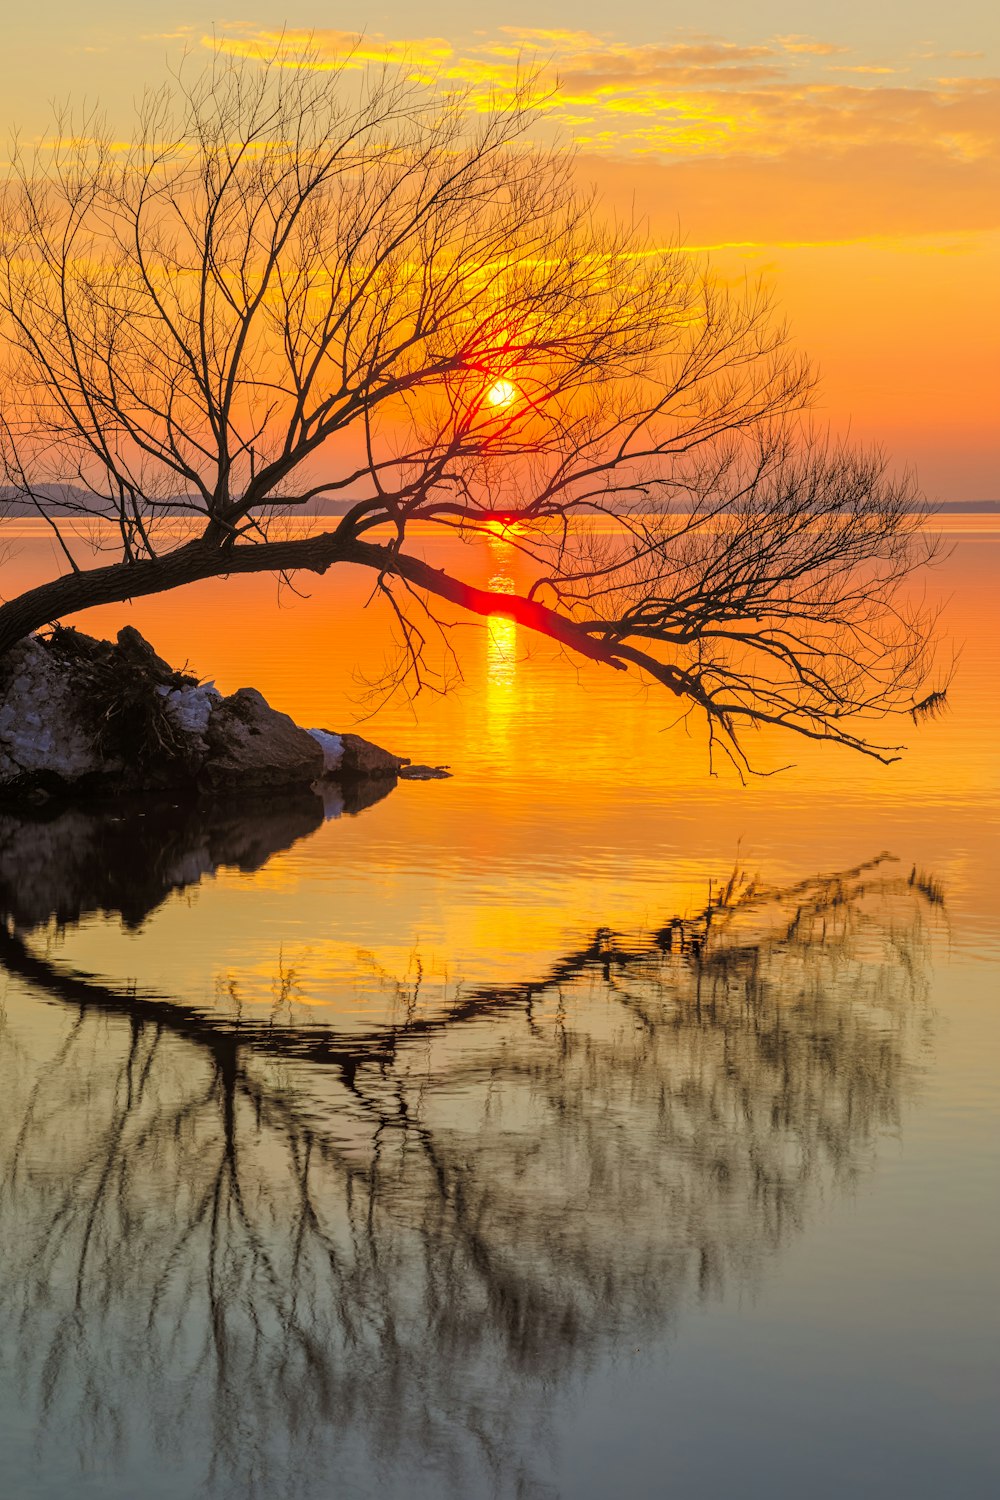 arbre sans feuilles sur l’eau au coucher du soleil